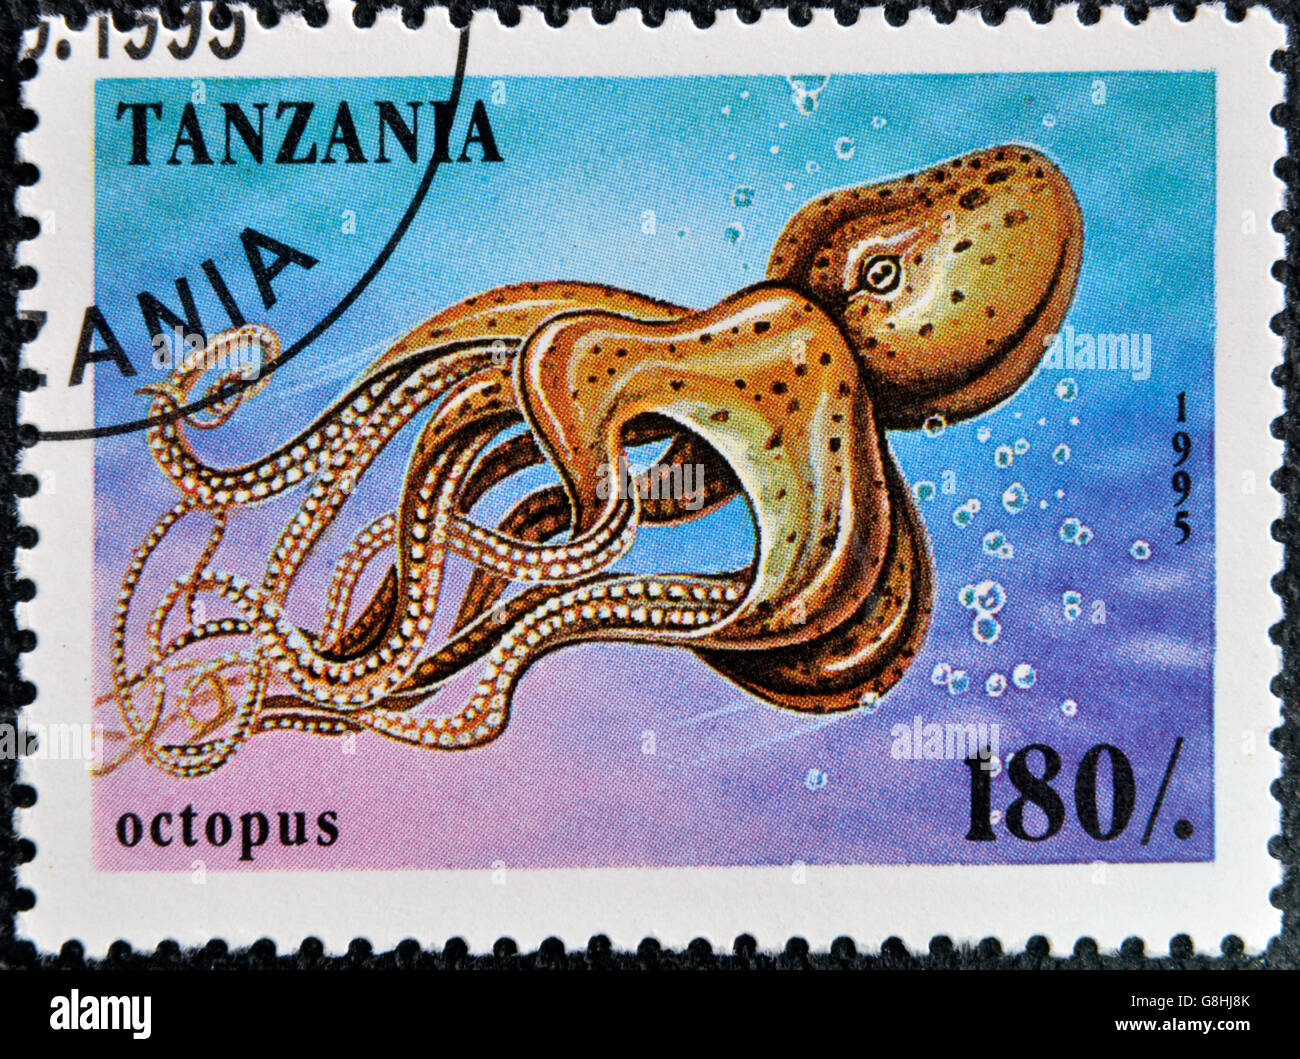 TANZANIA - CIRCA 1995: A stamp printed in Tanzania showing Octopus, circa 1995 Stock Photo